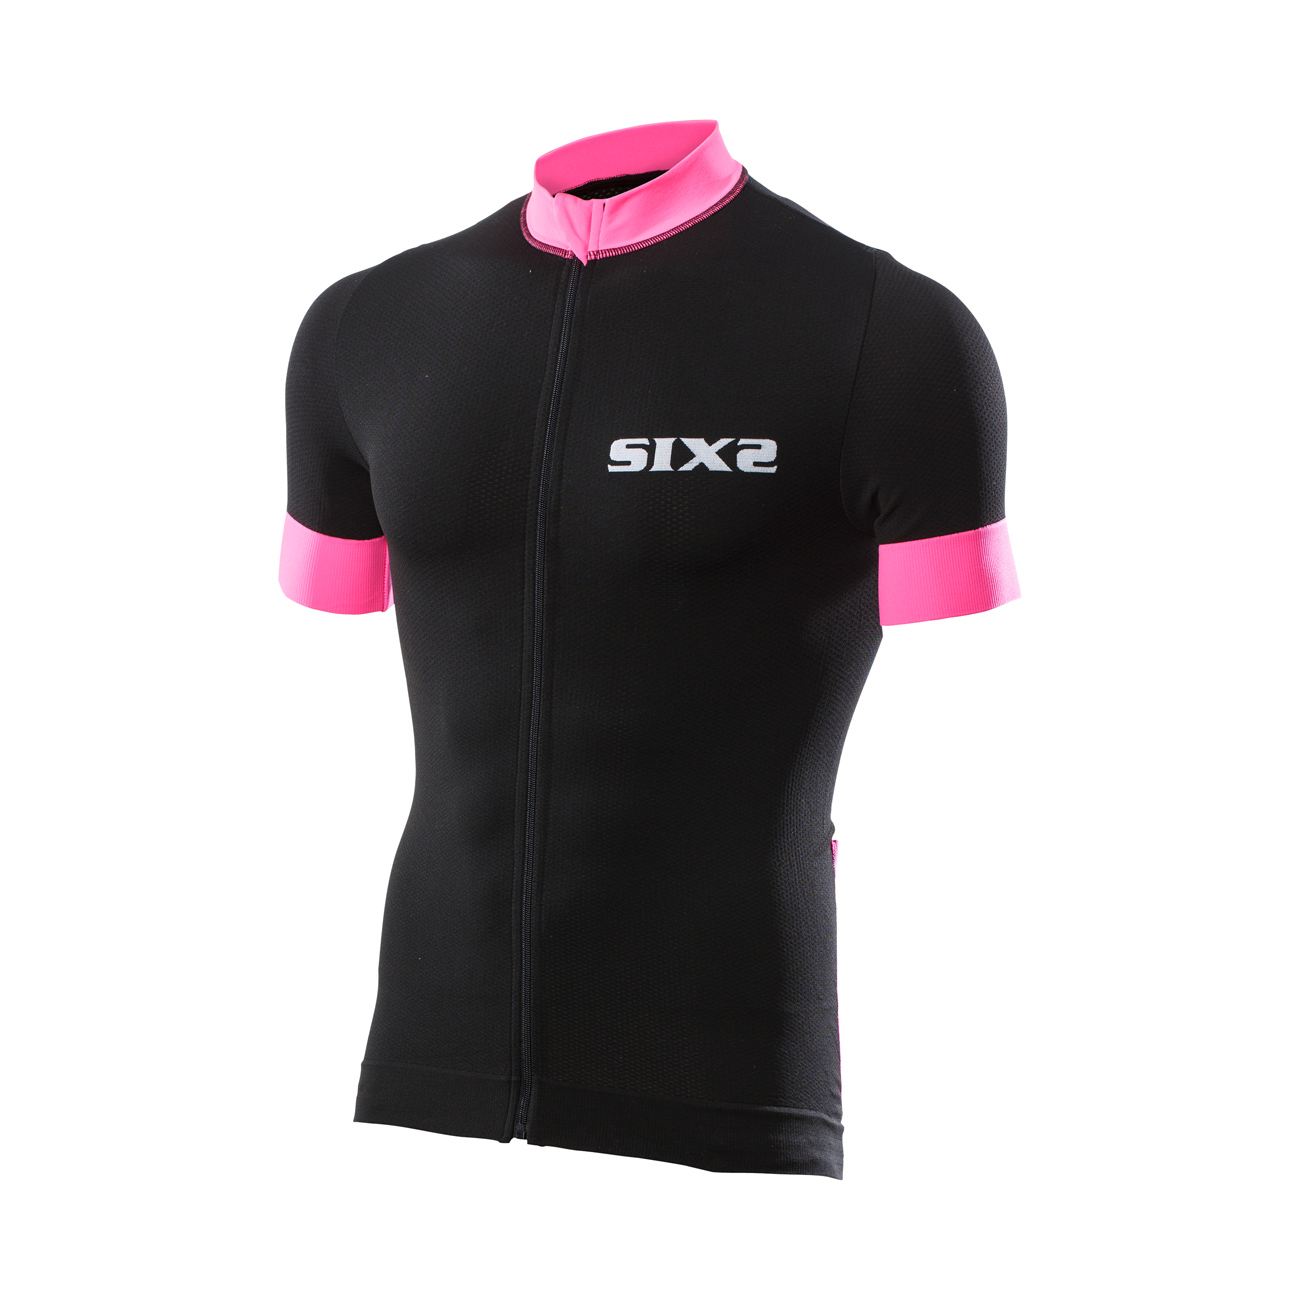 SIX2 Koszulka Kolarska Z Krótkim Rękawem - BIKE3 STRIPES - Różowy/czarny